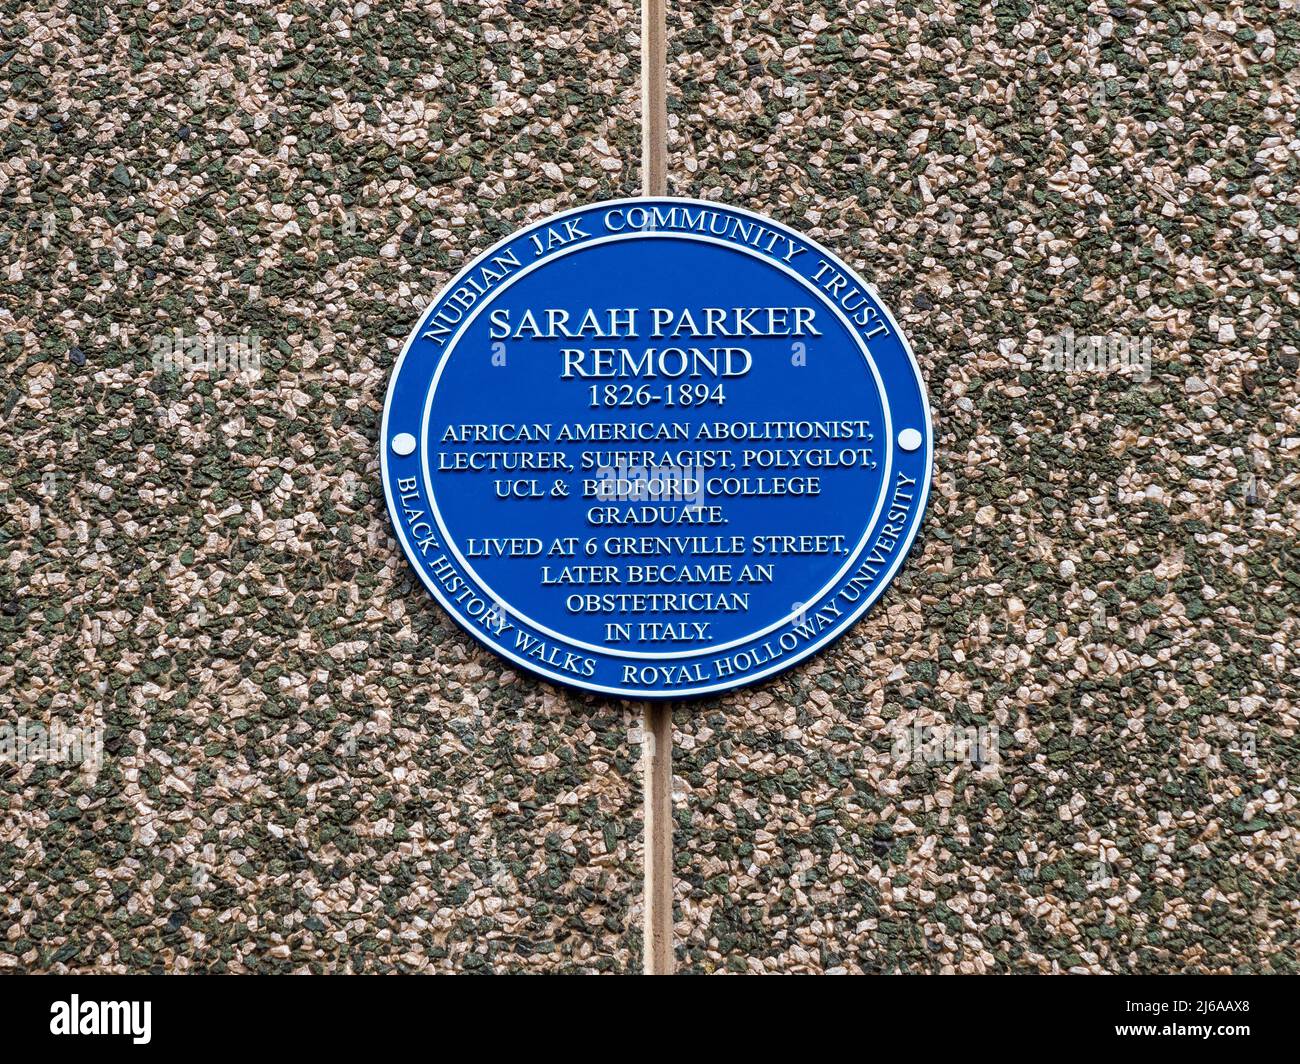 Sarah Parker Redmond Blue plaque Bloomsbury Londres - Sarah Parker Redmond était une Abolitionniste afro-américaine qui a étudié à l'UCL & Bedford College. Banque D'Images